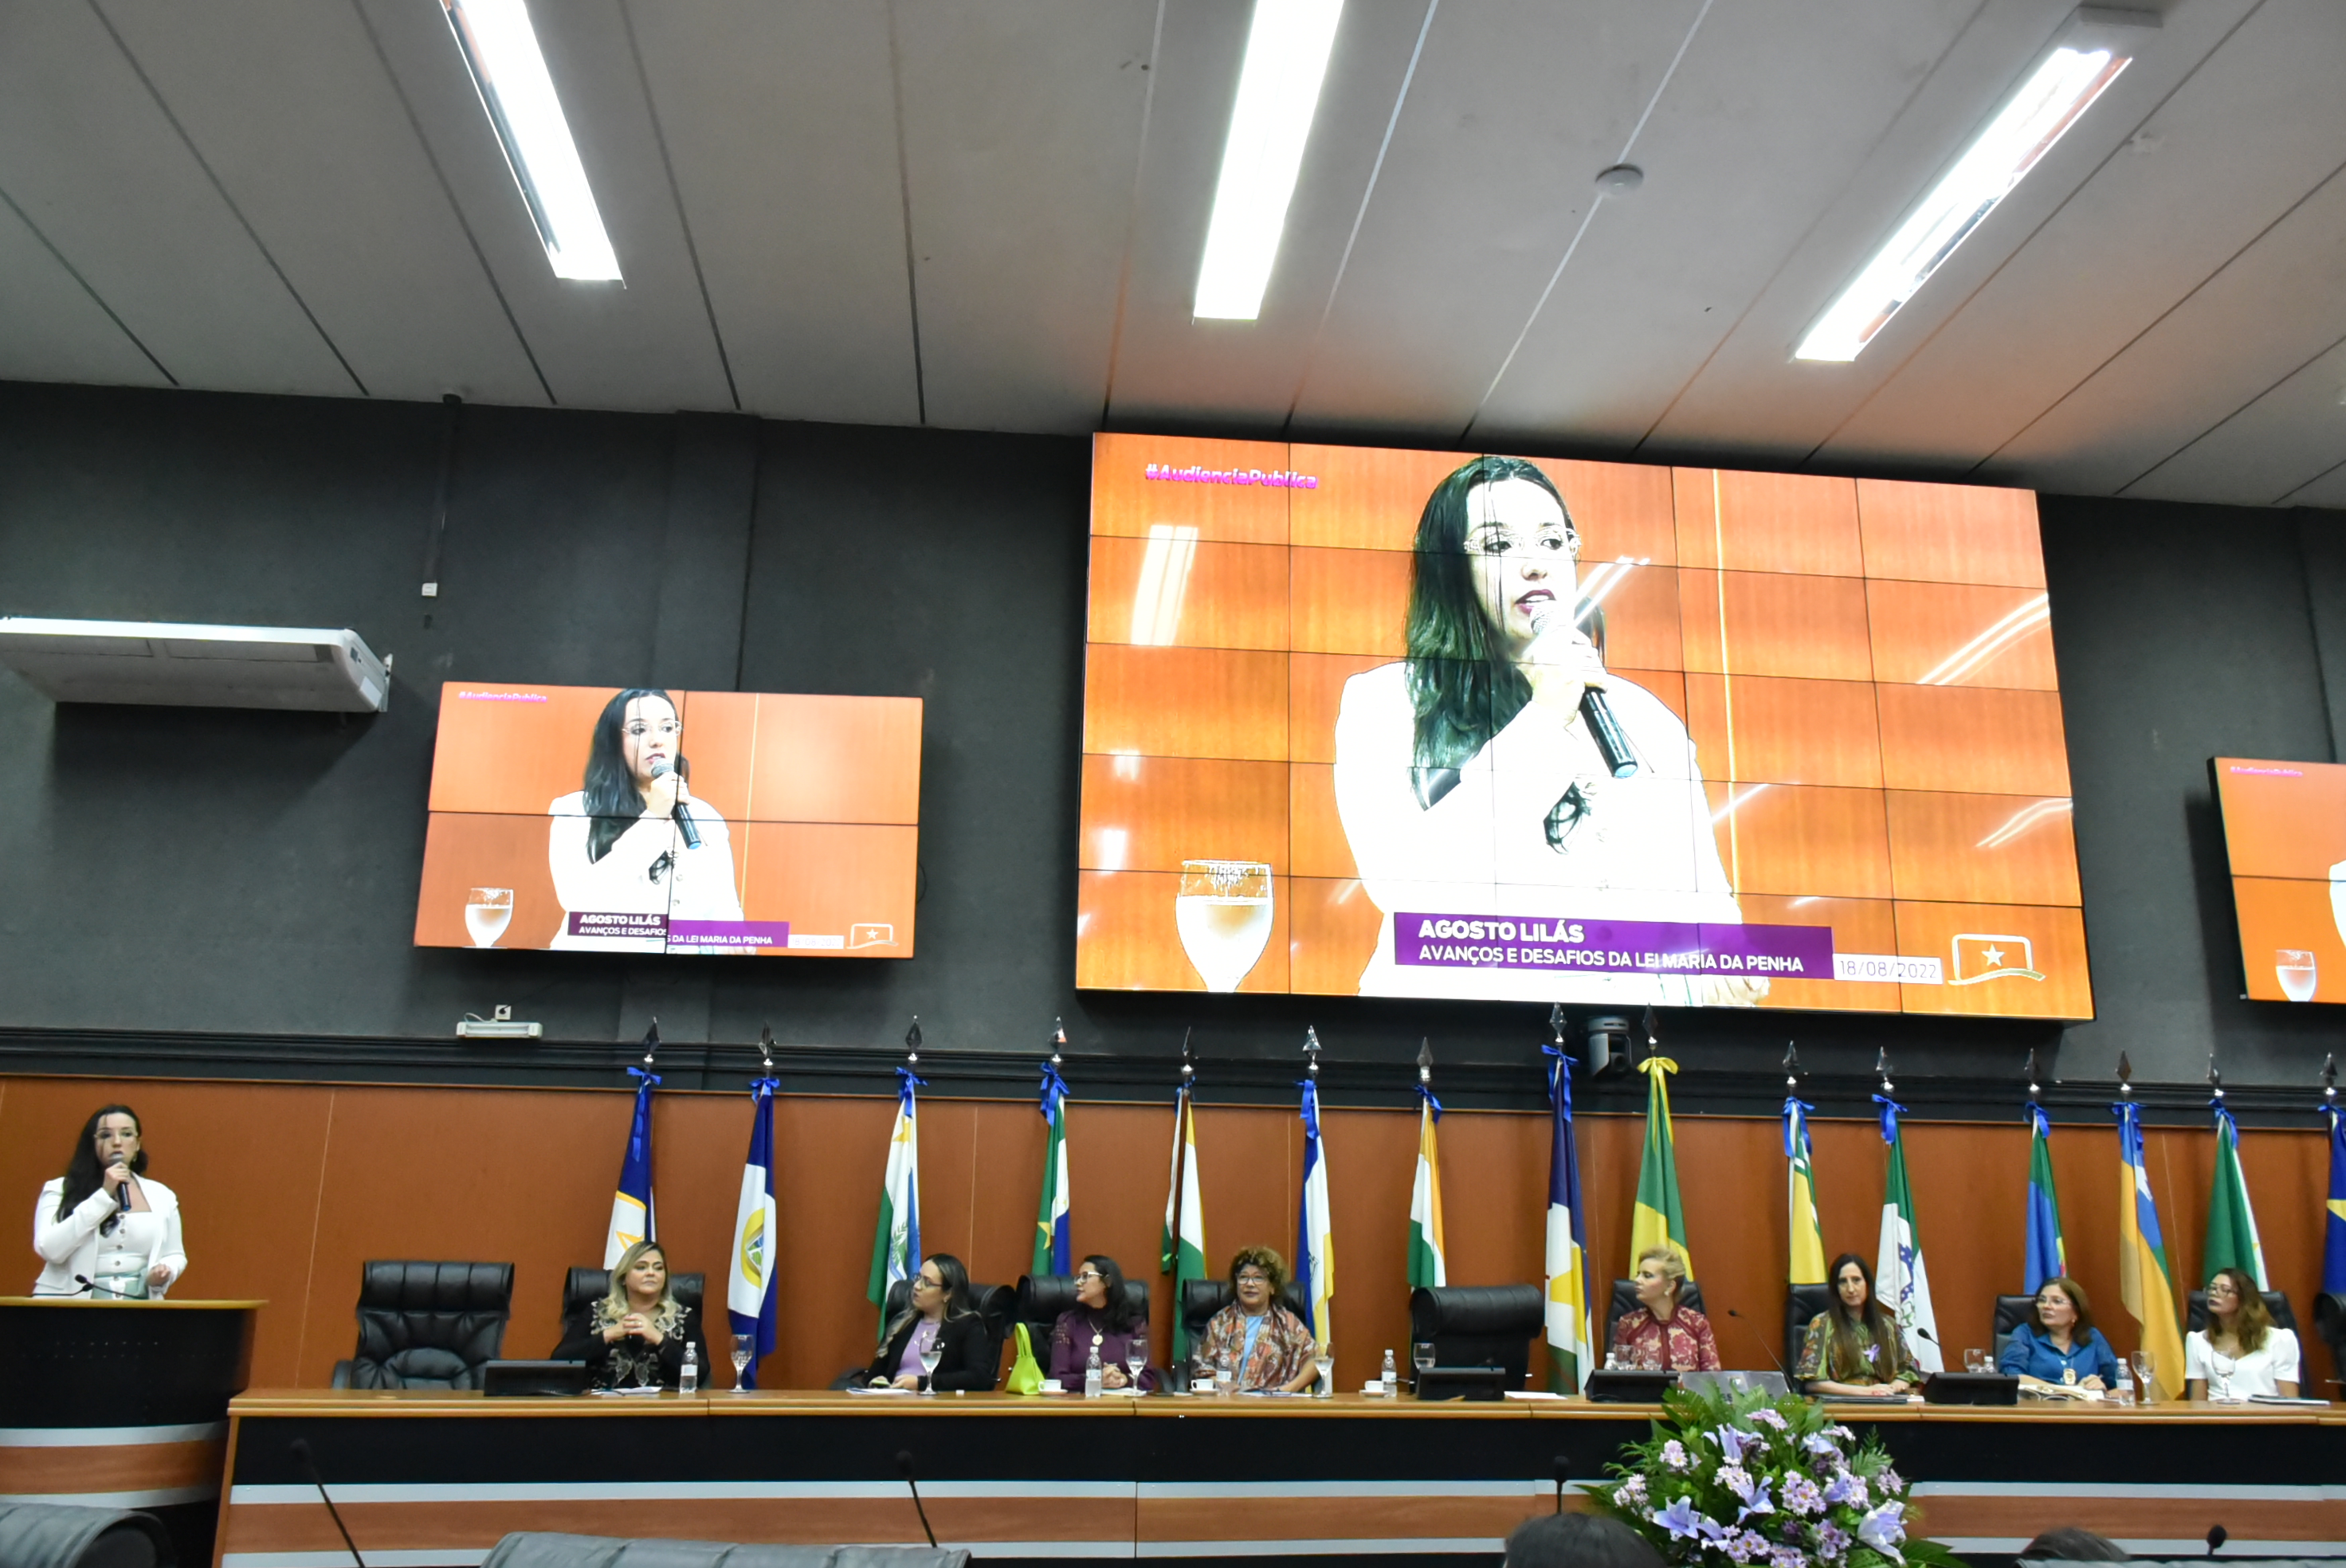 Imagem colorida da juíza Suelen Alves,  falando ao microfone na audiência pública na Assembléia Legislativa de Roraima (ALE-RR). Ao fundo dela, encontra-se três telões da transmissão da fala da juíza. 